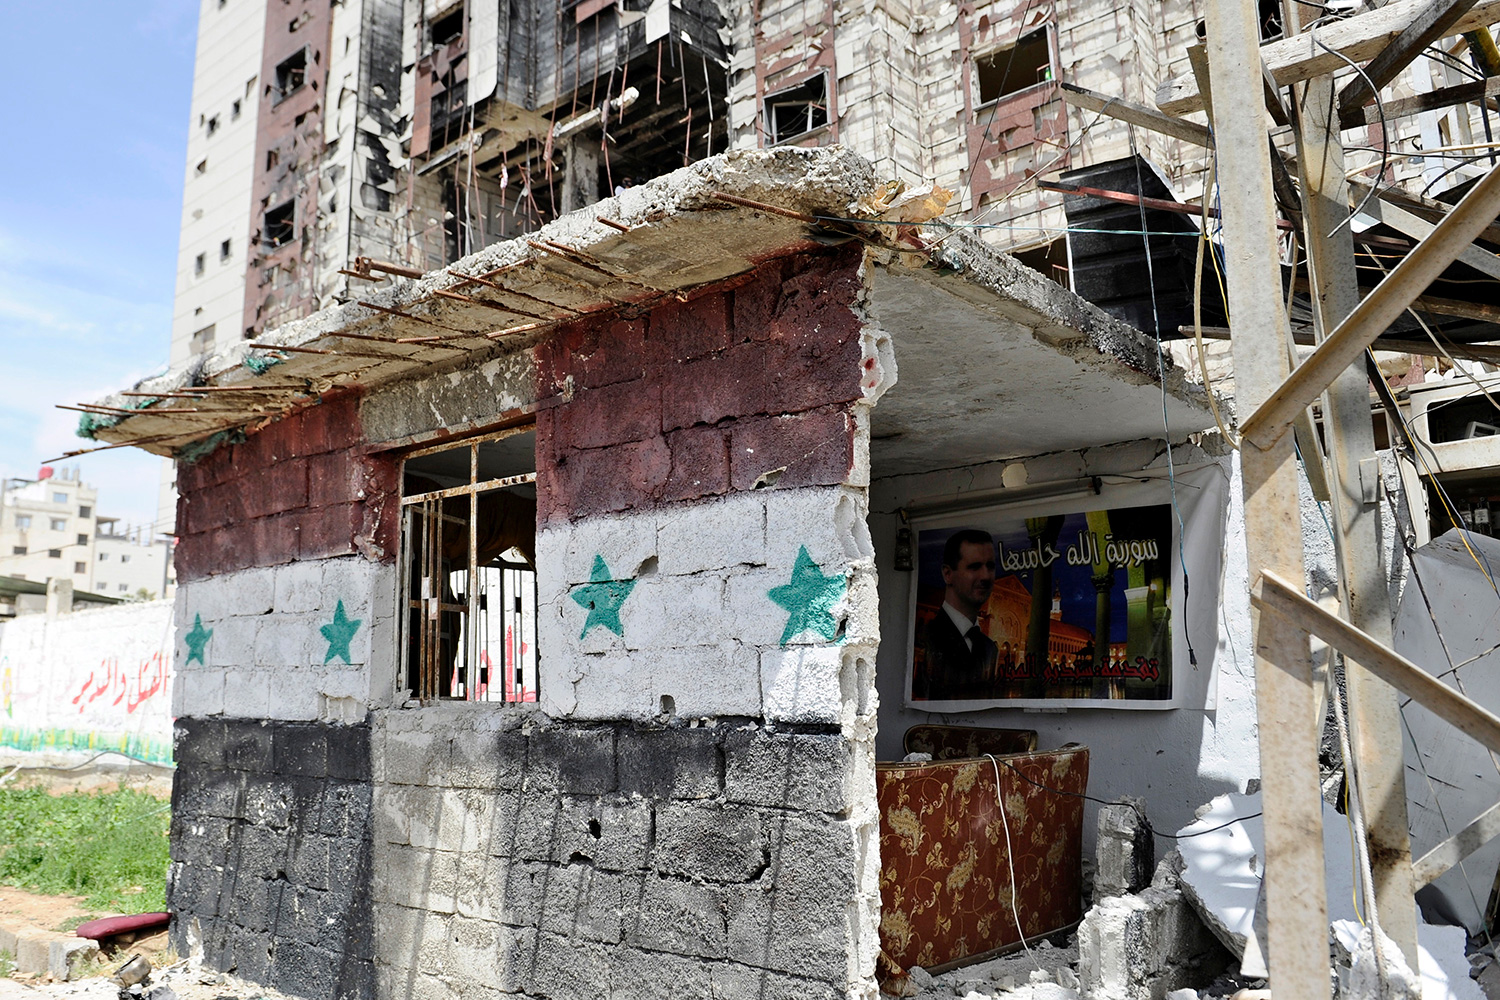 La ONU entrega decenas de millones al régimen de Asad a través de un programa de ayuda